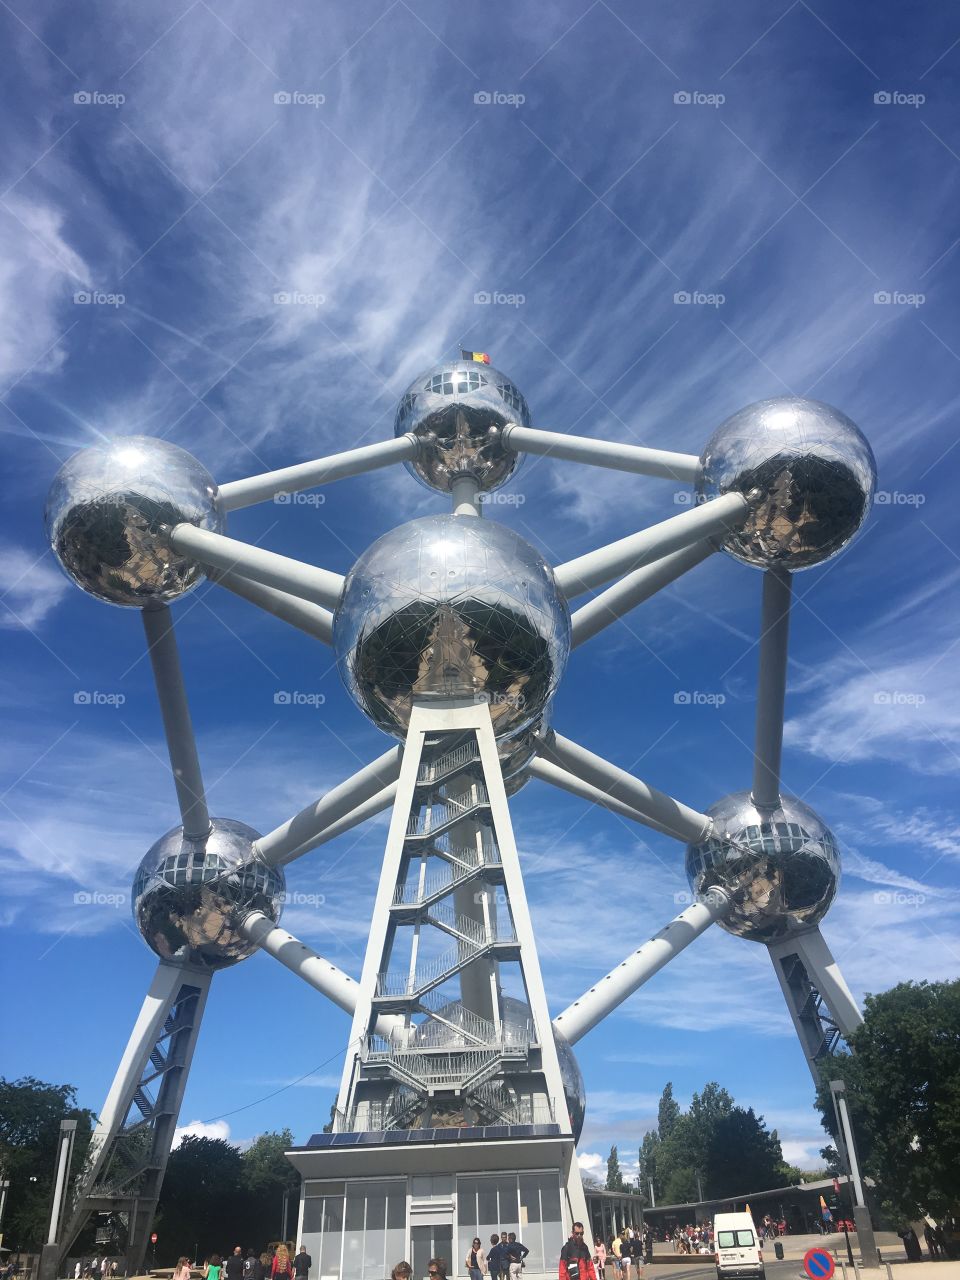 The atomium in Brussels Belgium 